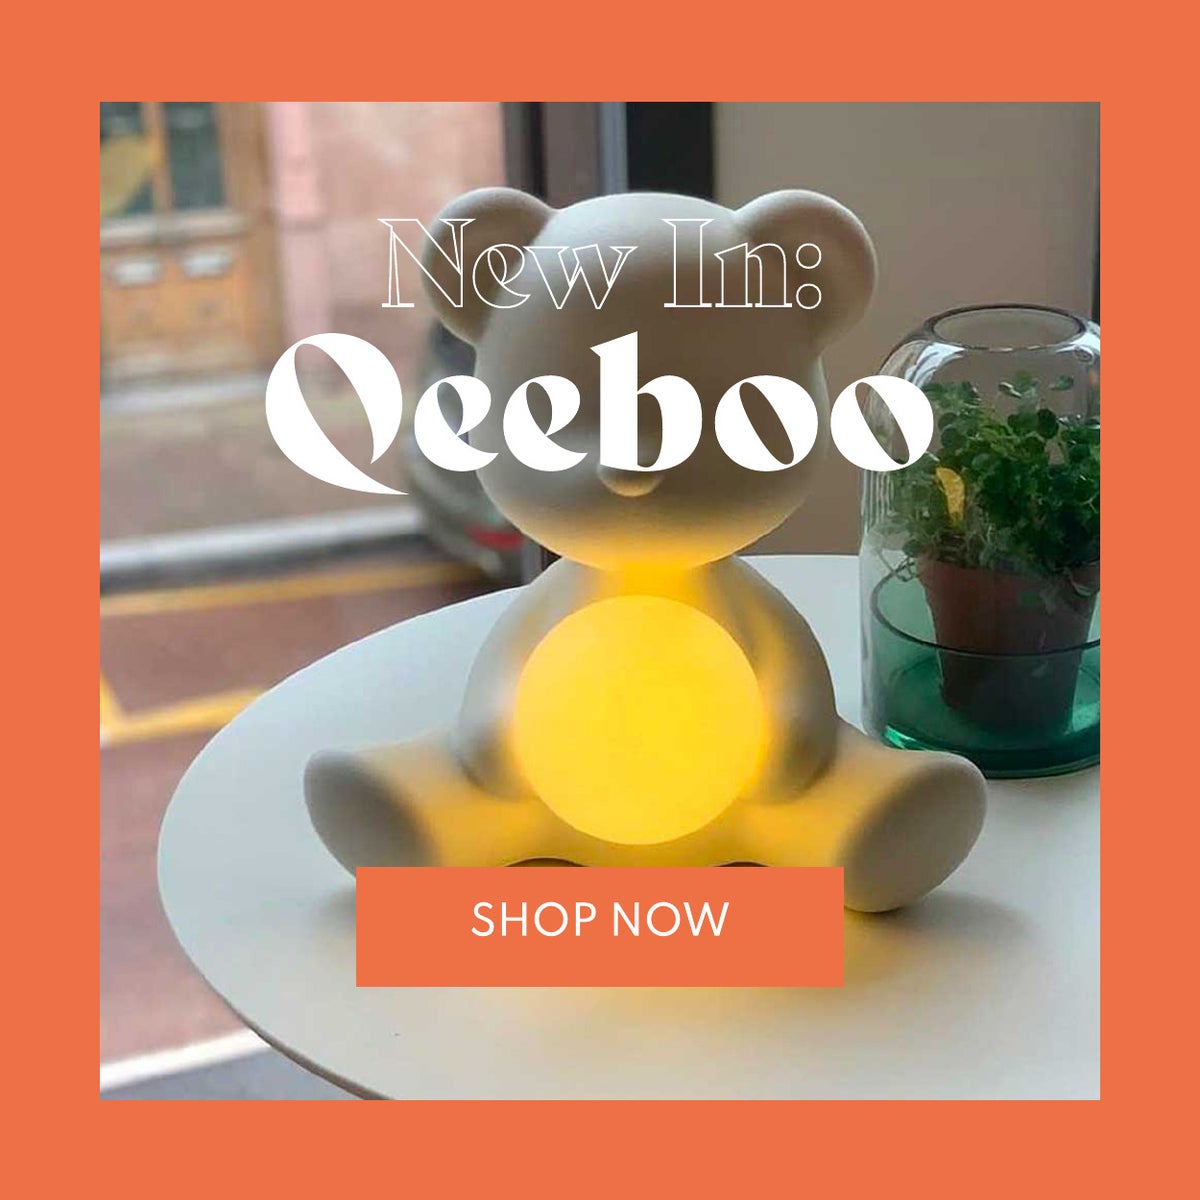 Qeeboo Launch